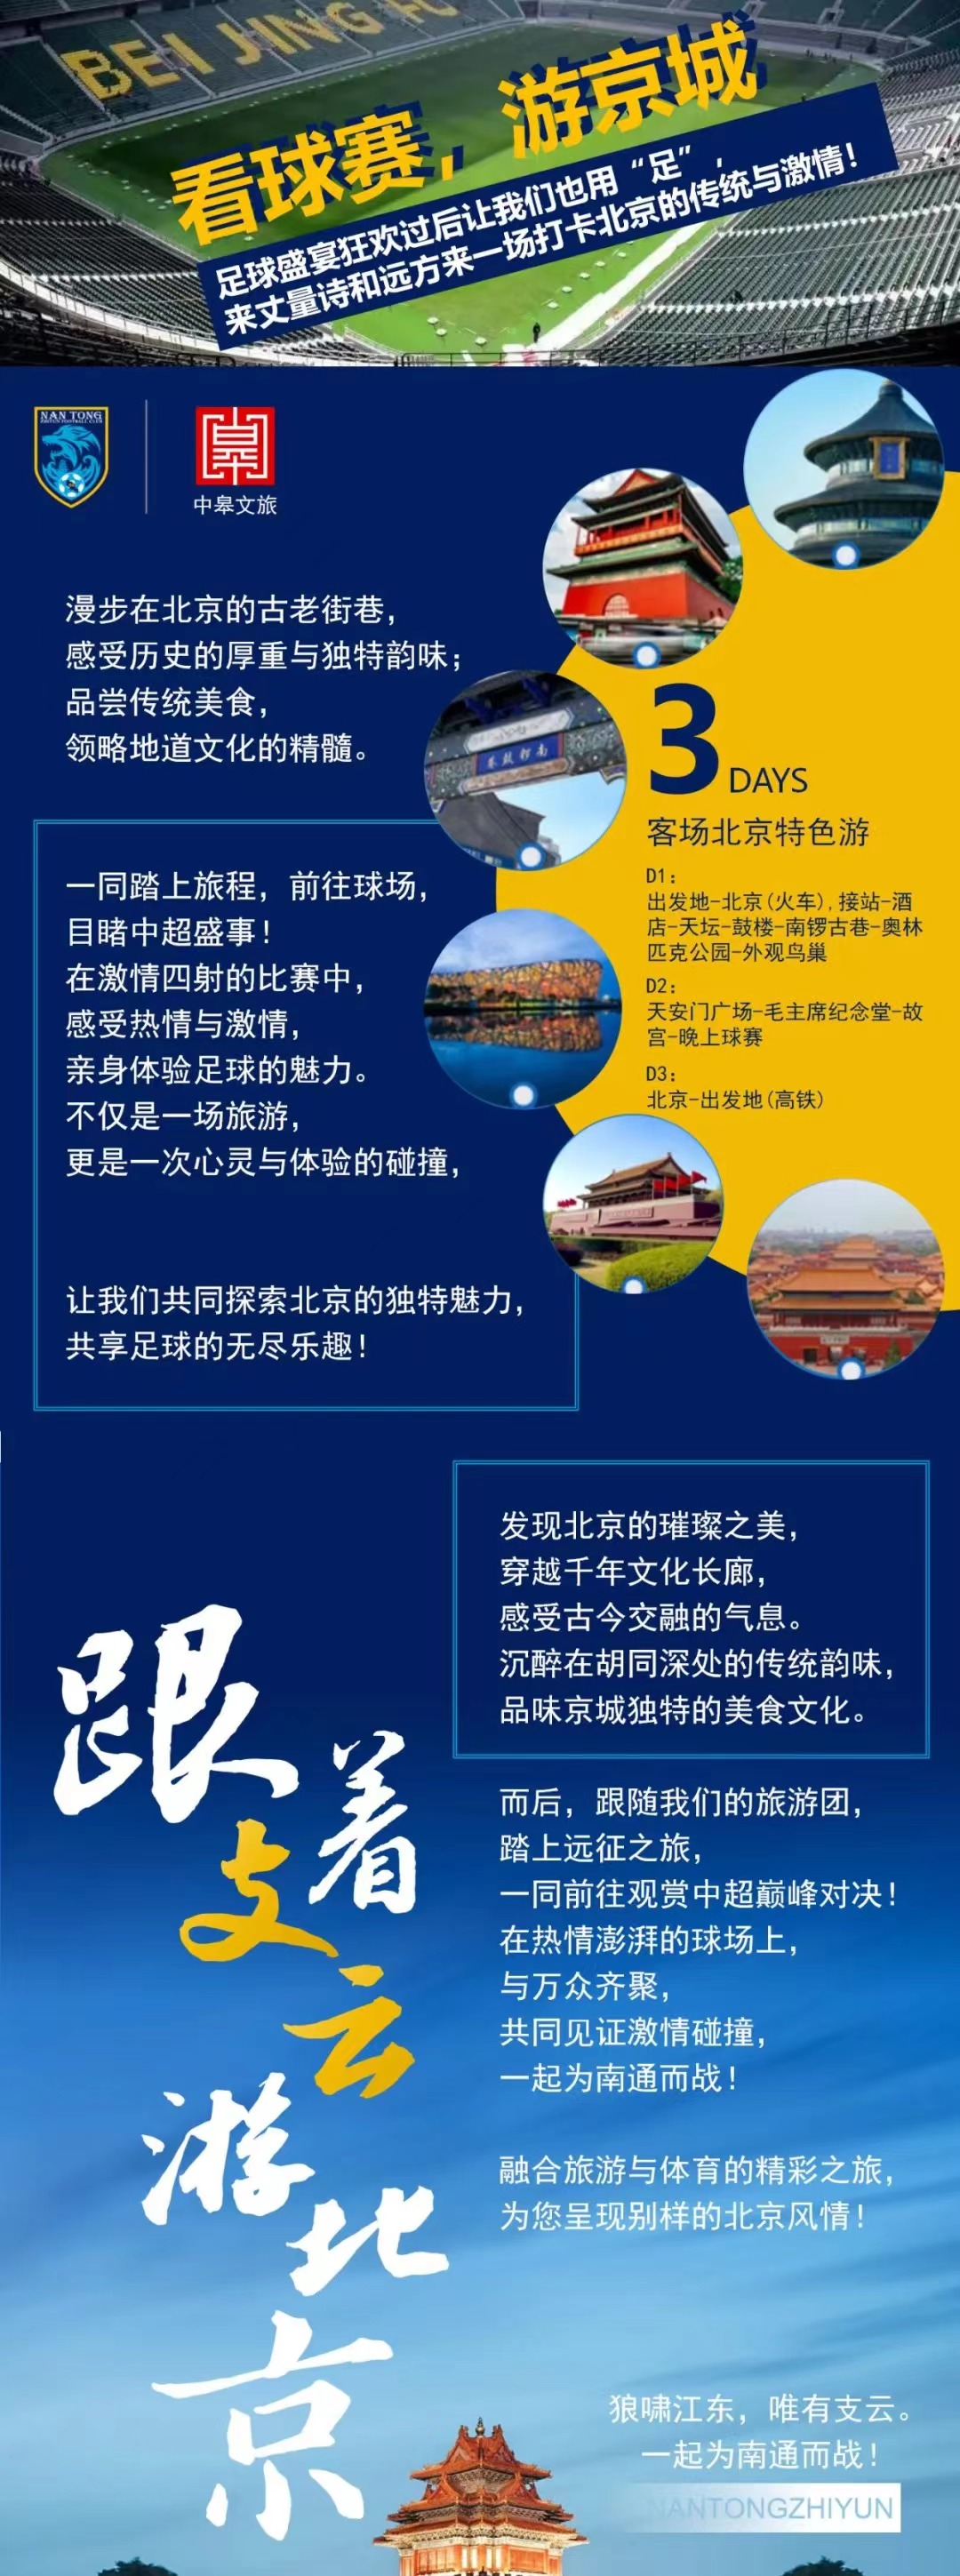 看球旅游两不误南通队推出客场北京3日游:费用2580元或2800元